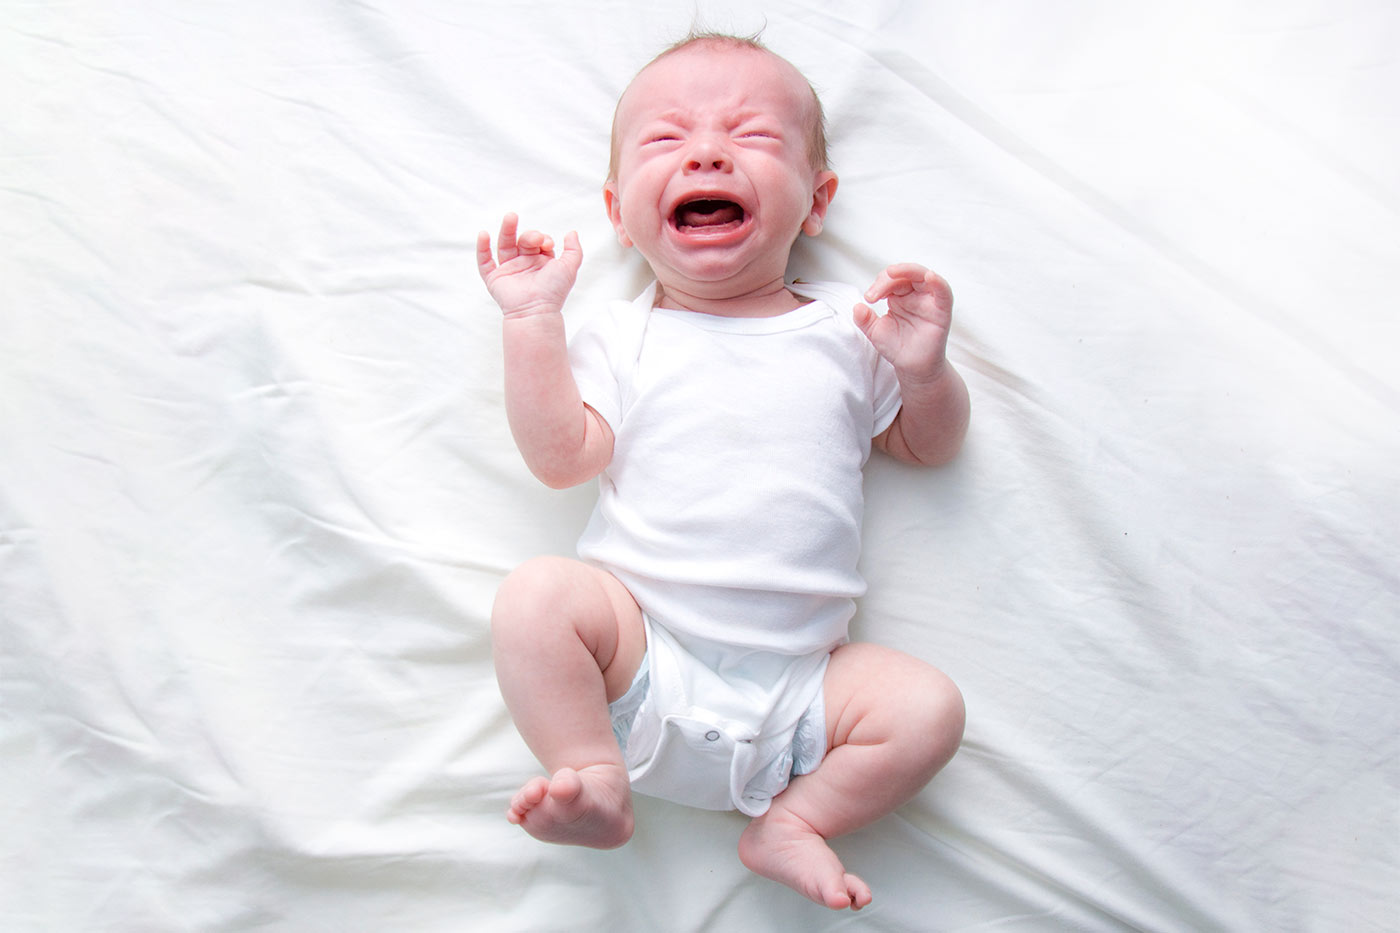 Newborn Wakes Up Screaming